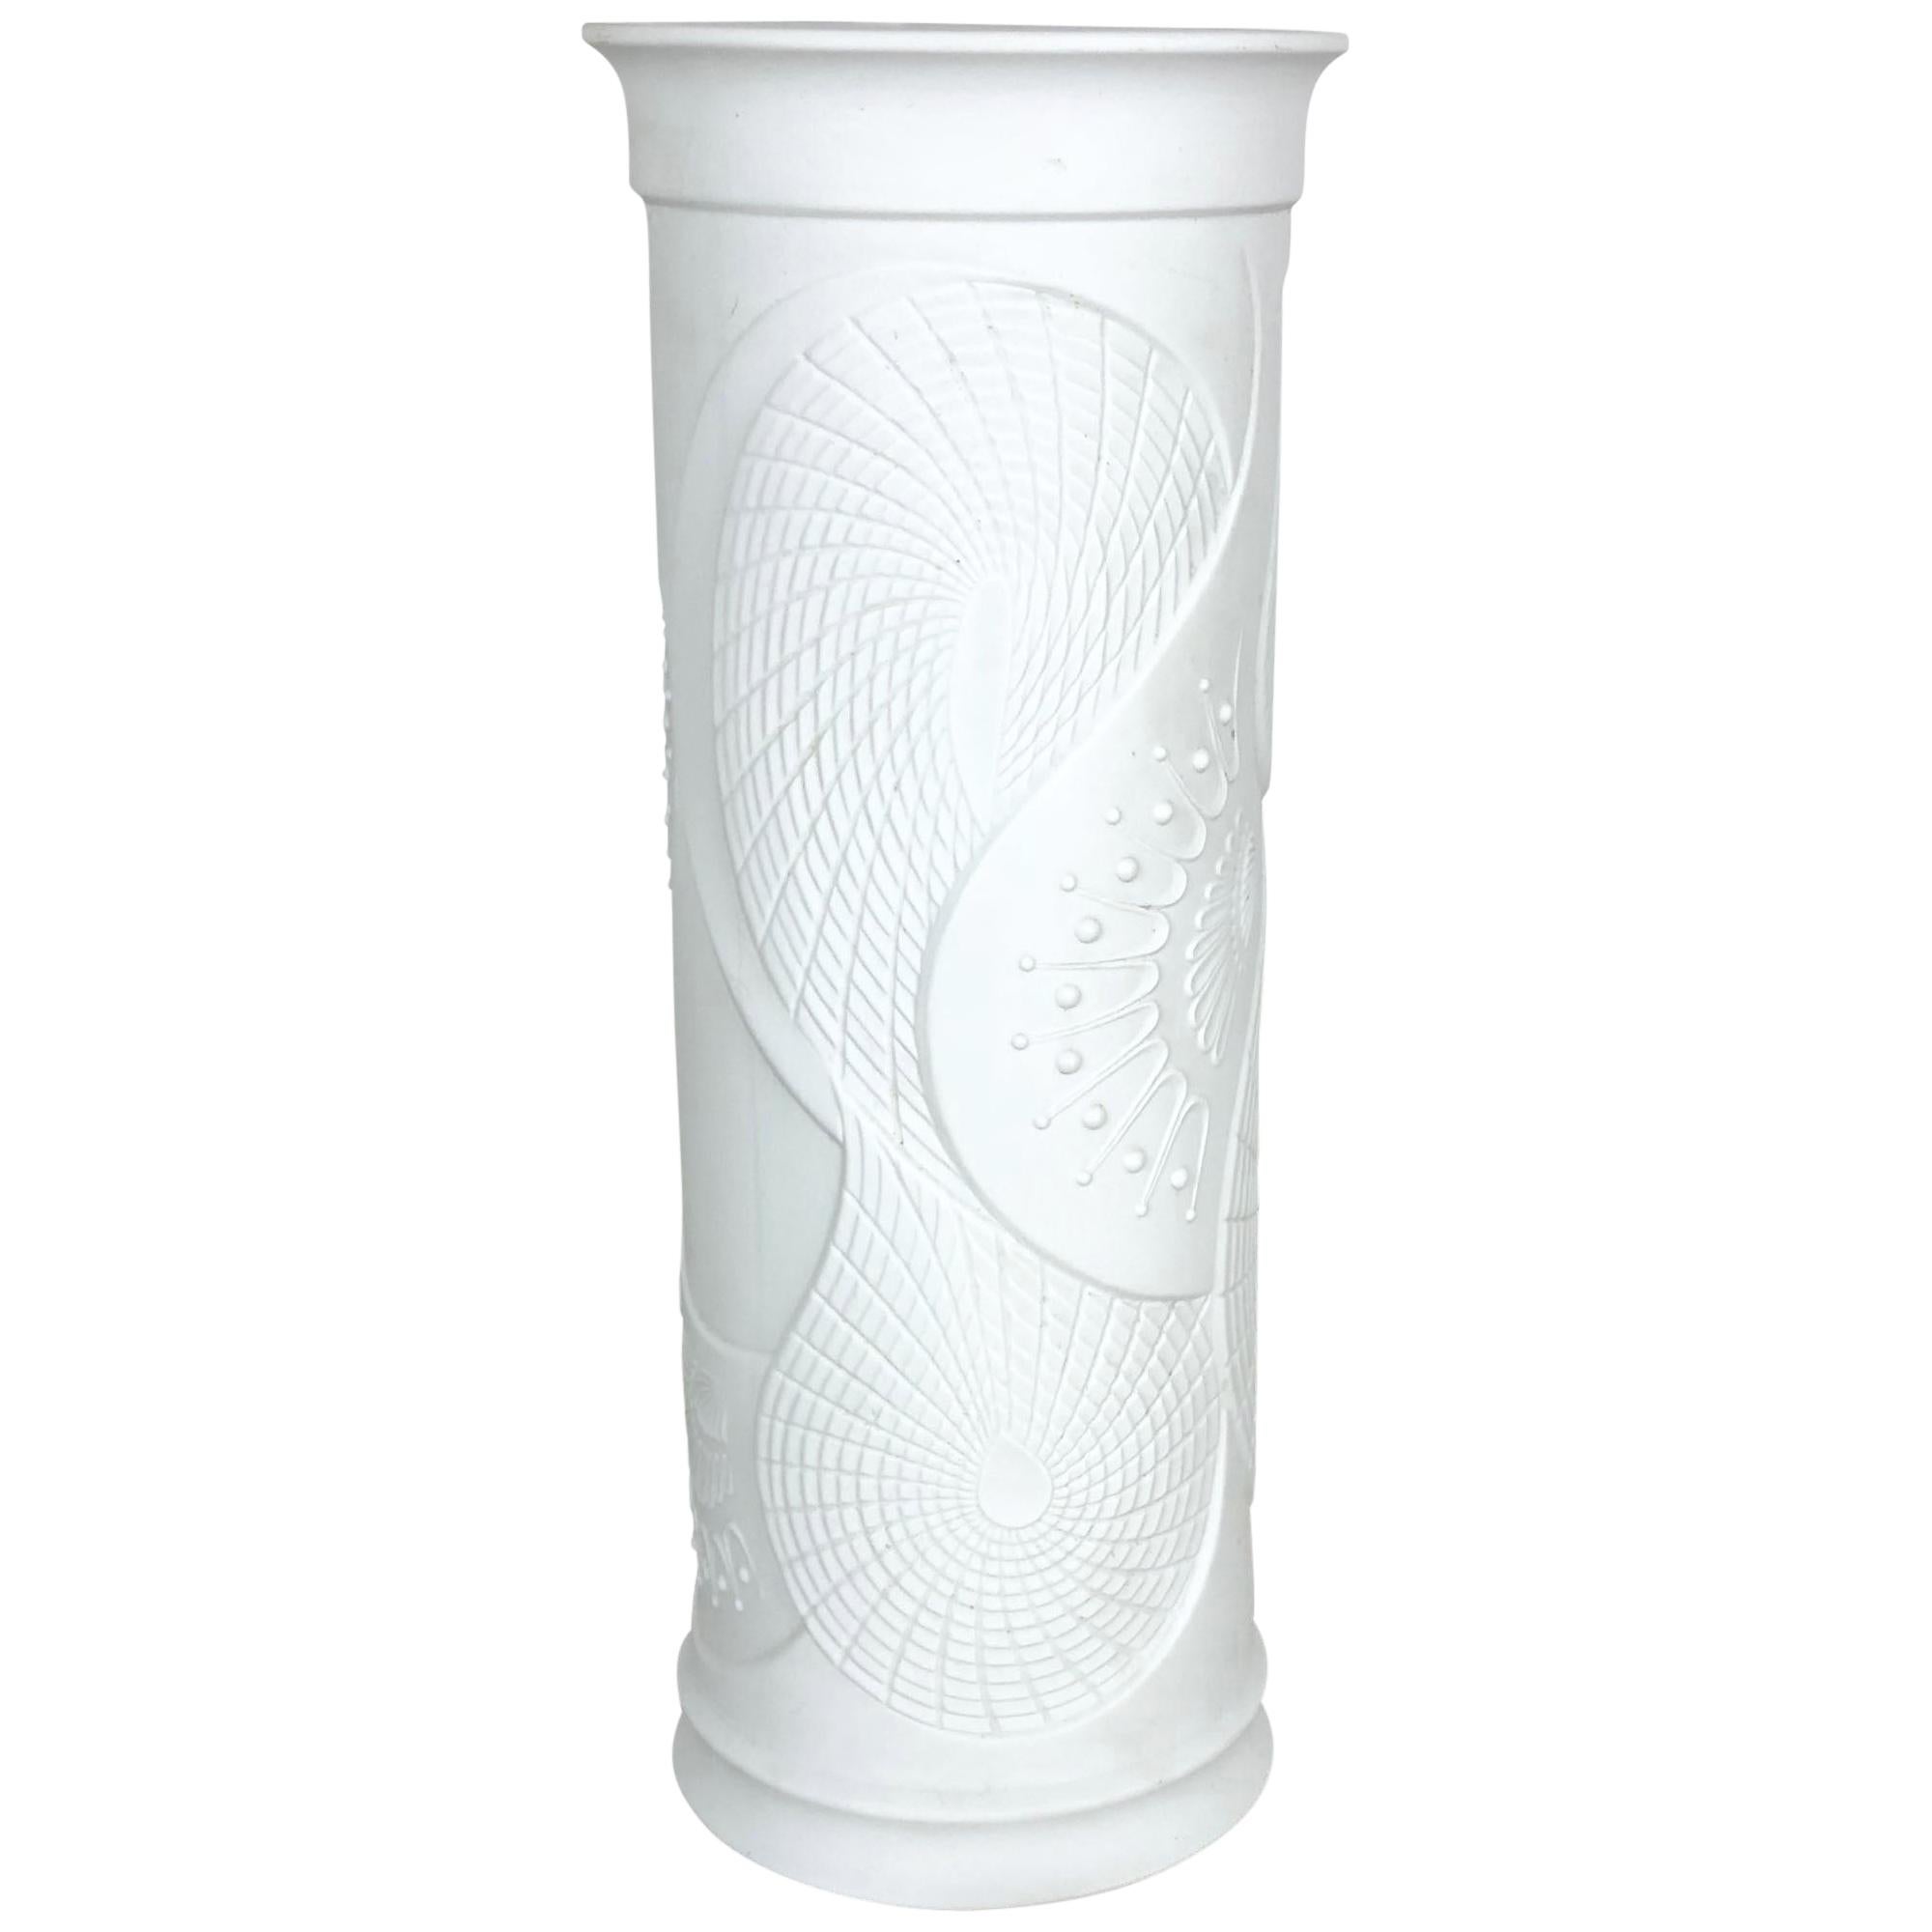 Grand vase allemand en porcelaine biscuit OP Art des années 1970 fabriqué par AK Kaiser, Allemagne